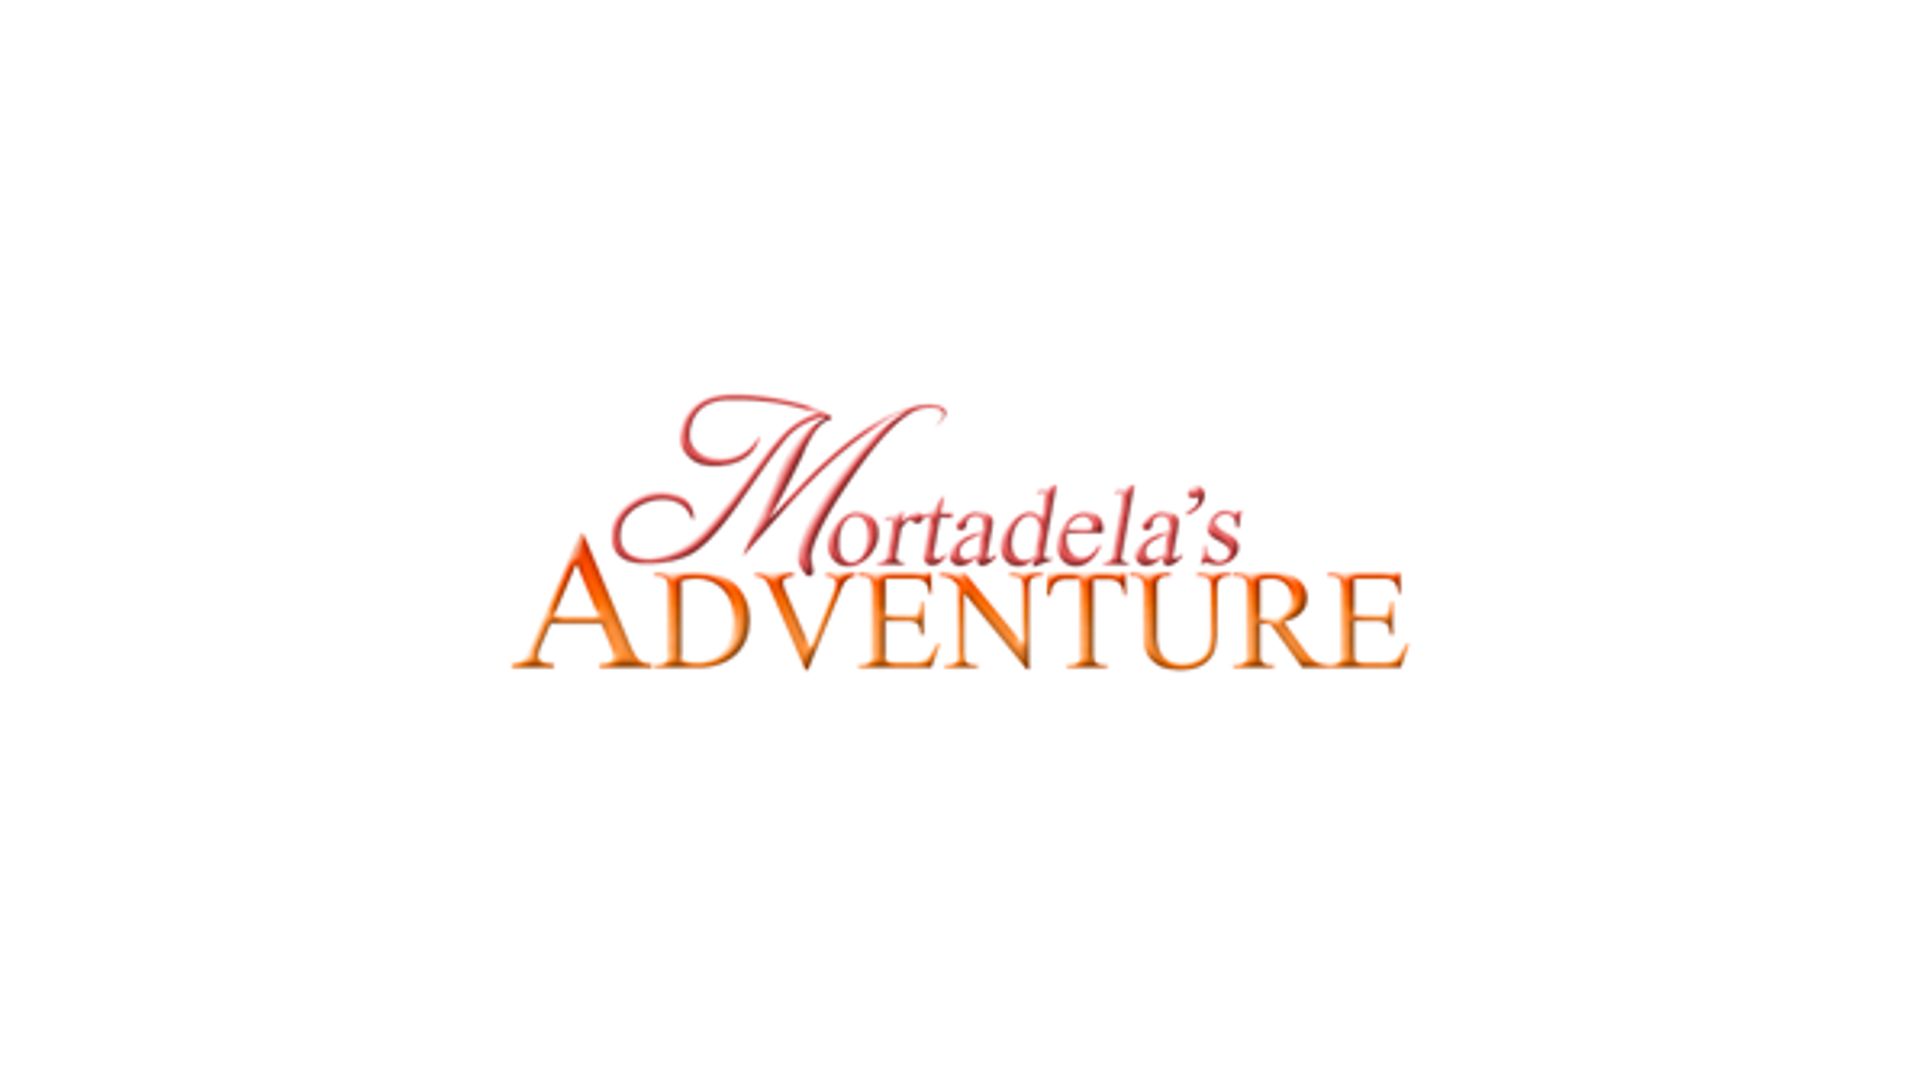 Mortadela's Adventure